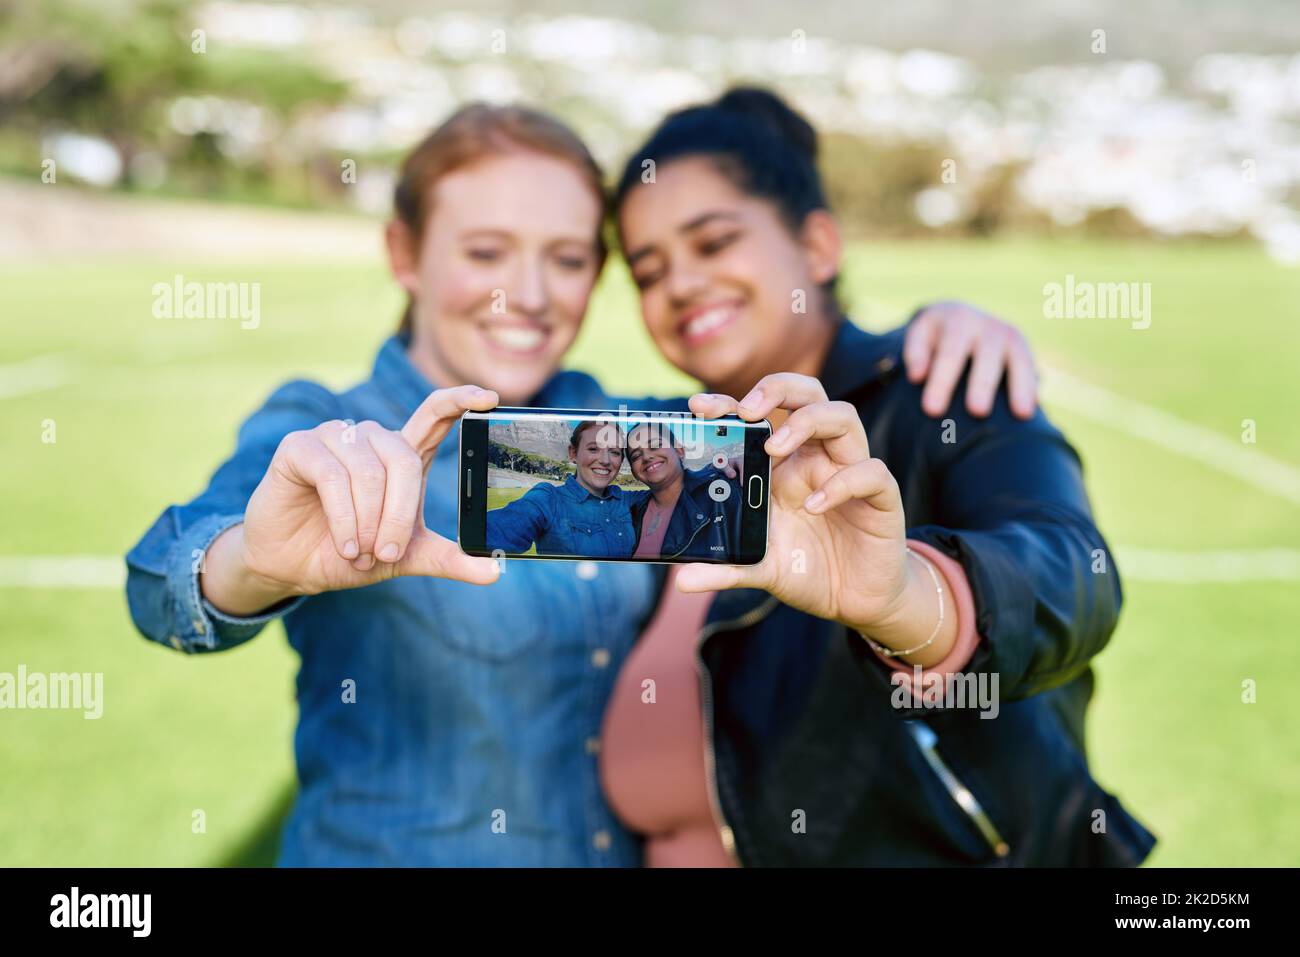 Nous devons capturer notre amitié ensemble. Photo d'amis féminins prenant une photo ensemble à l'extérieur. Banque D'Images